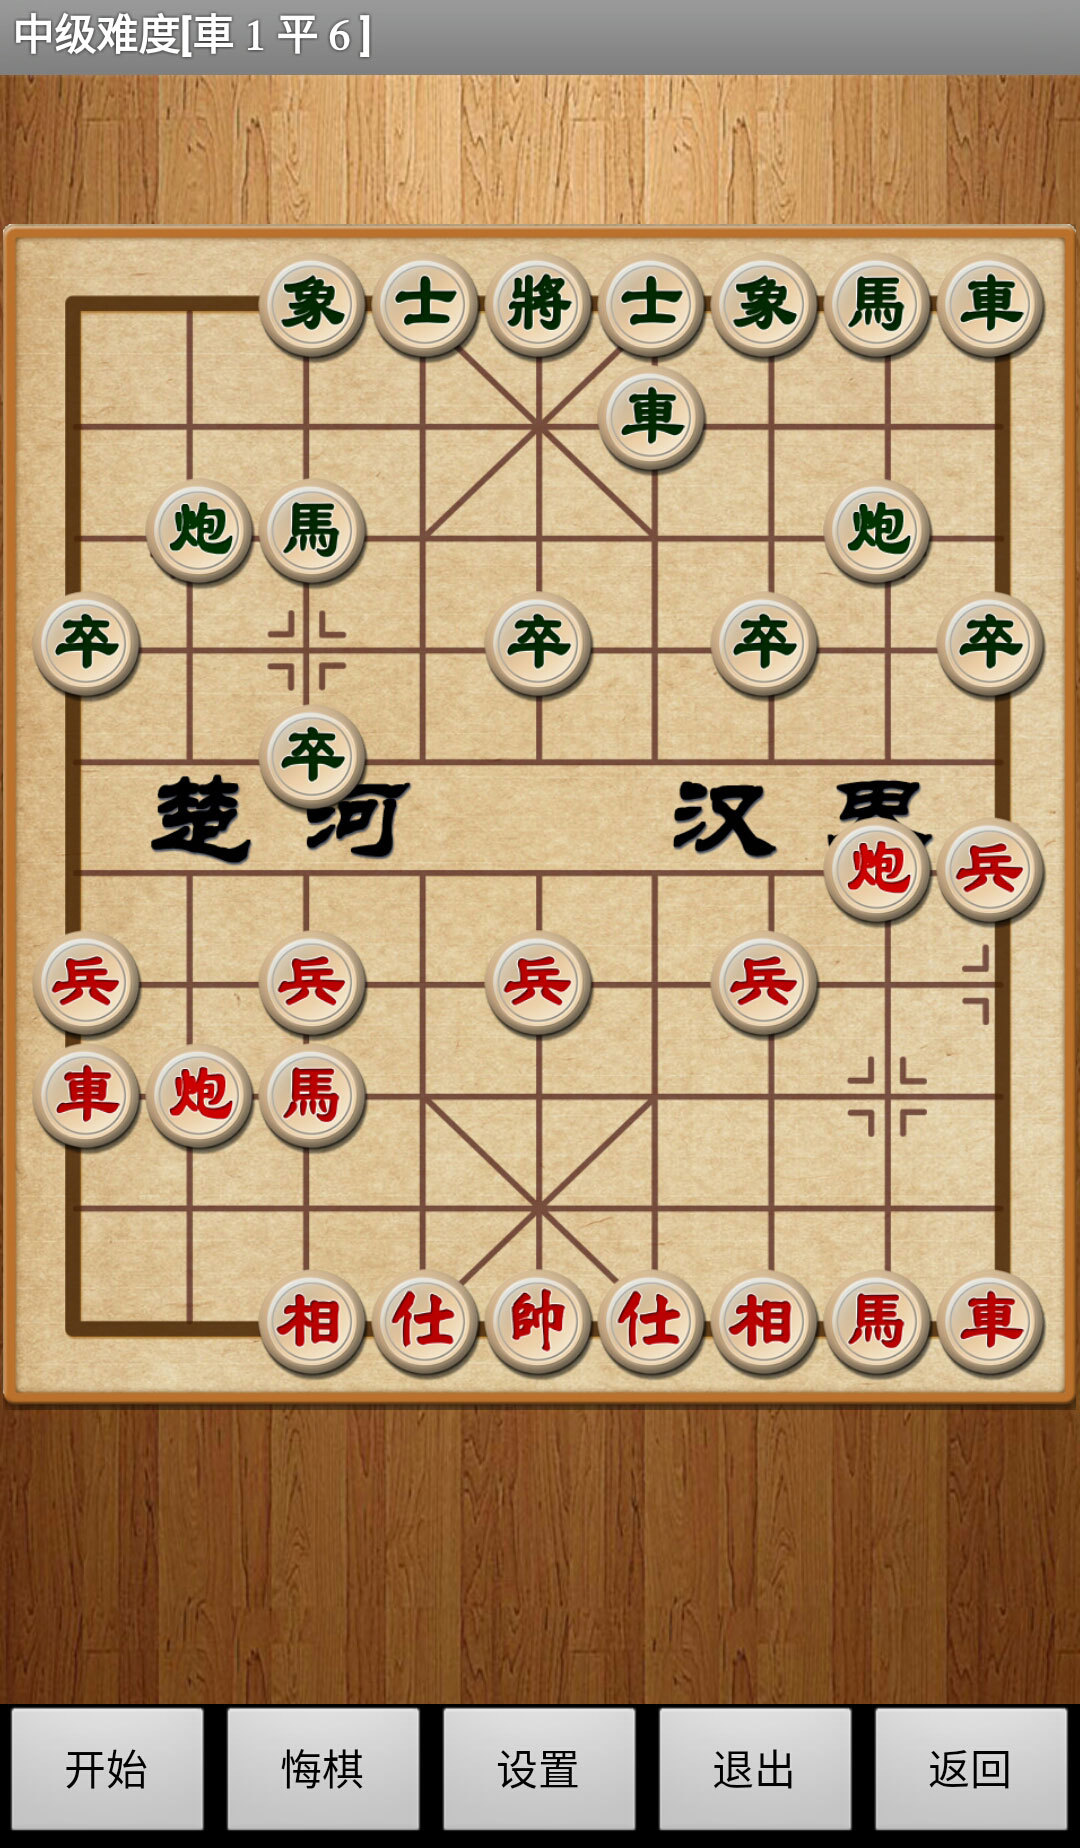 经典中国象棋APP V4.3.5 安卓版截图3